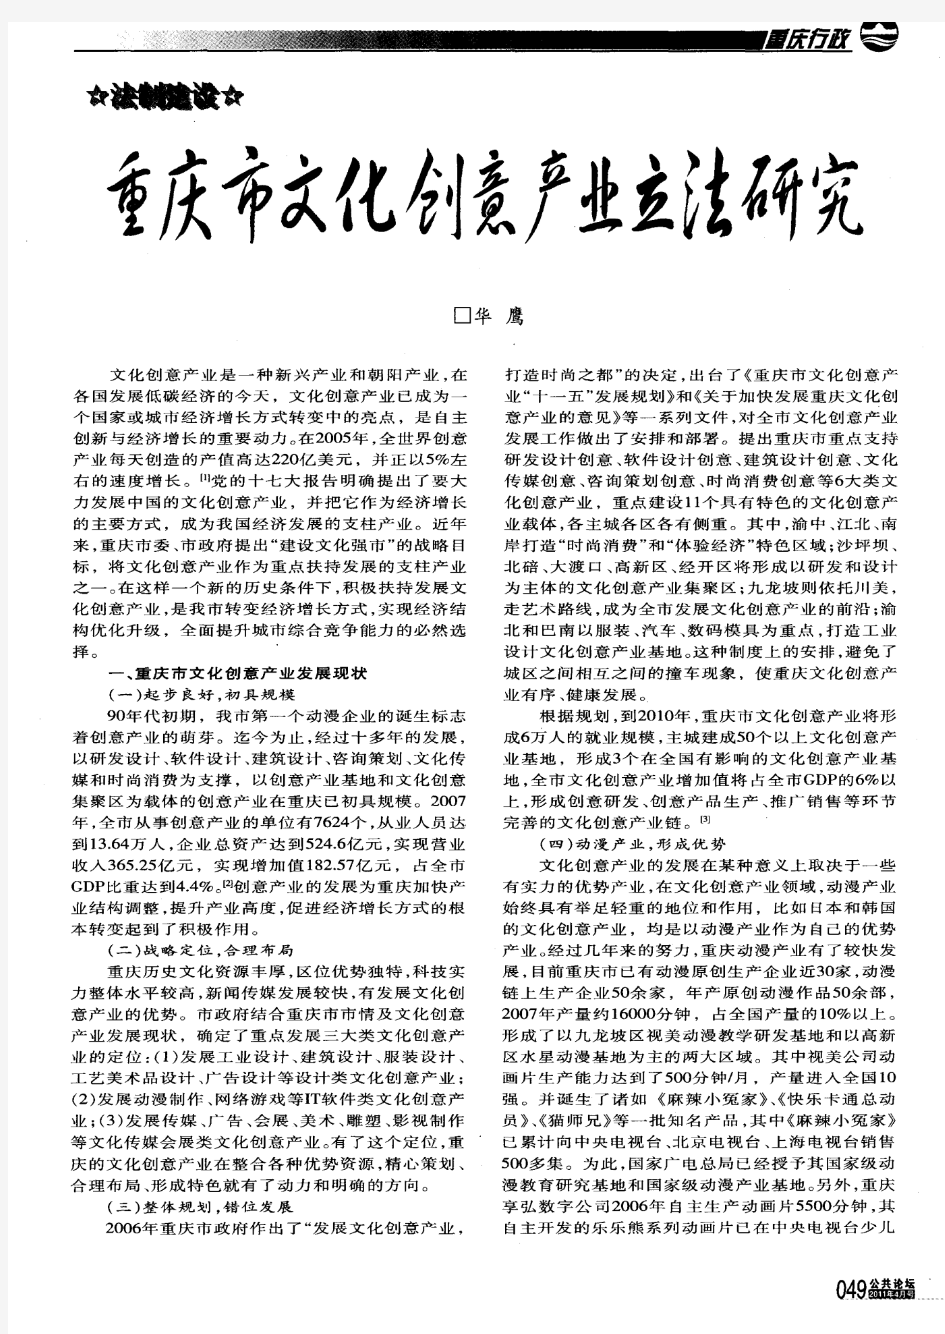 重庆市文化创意产业立法研究